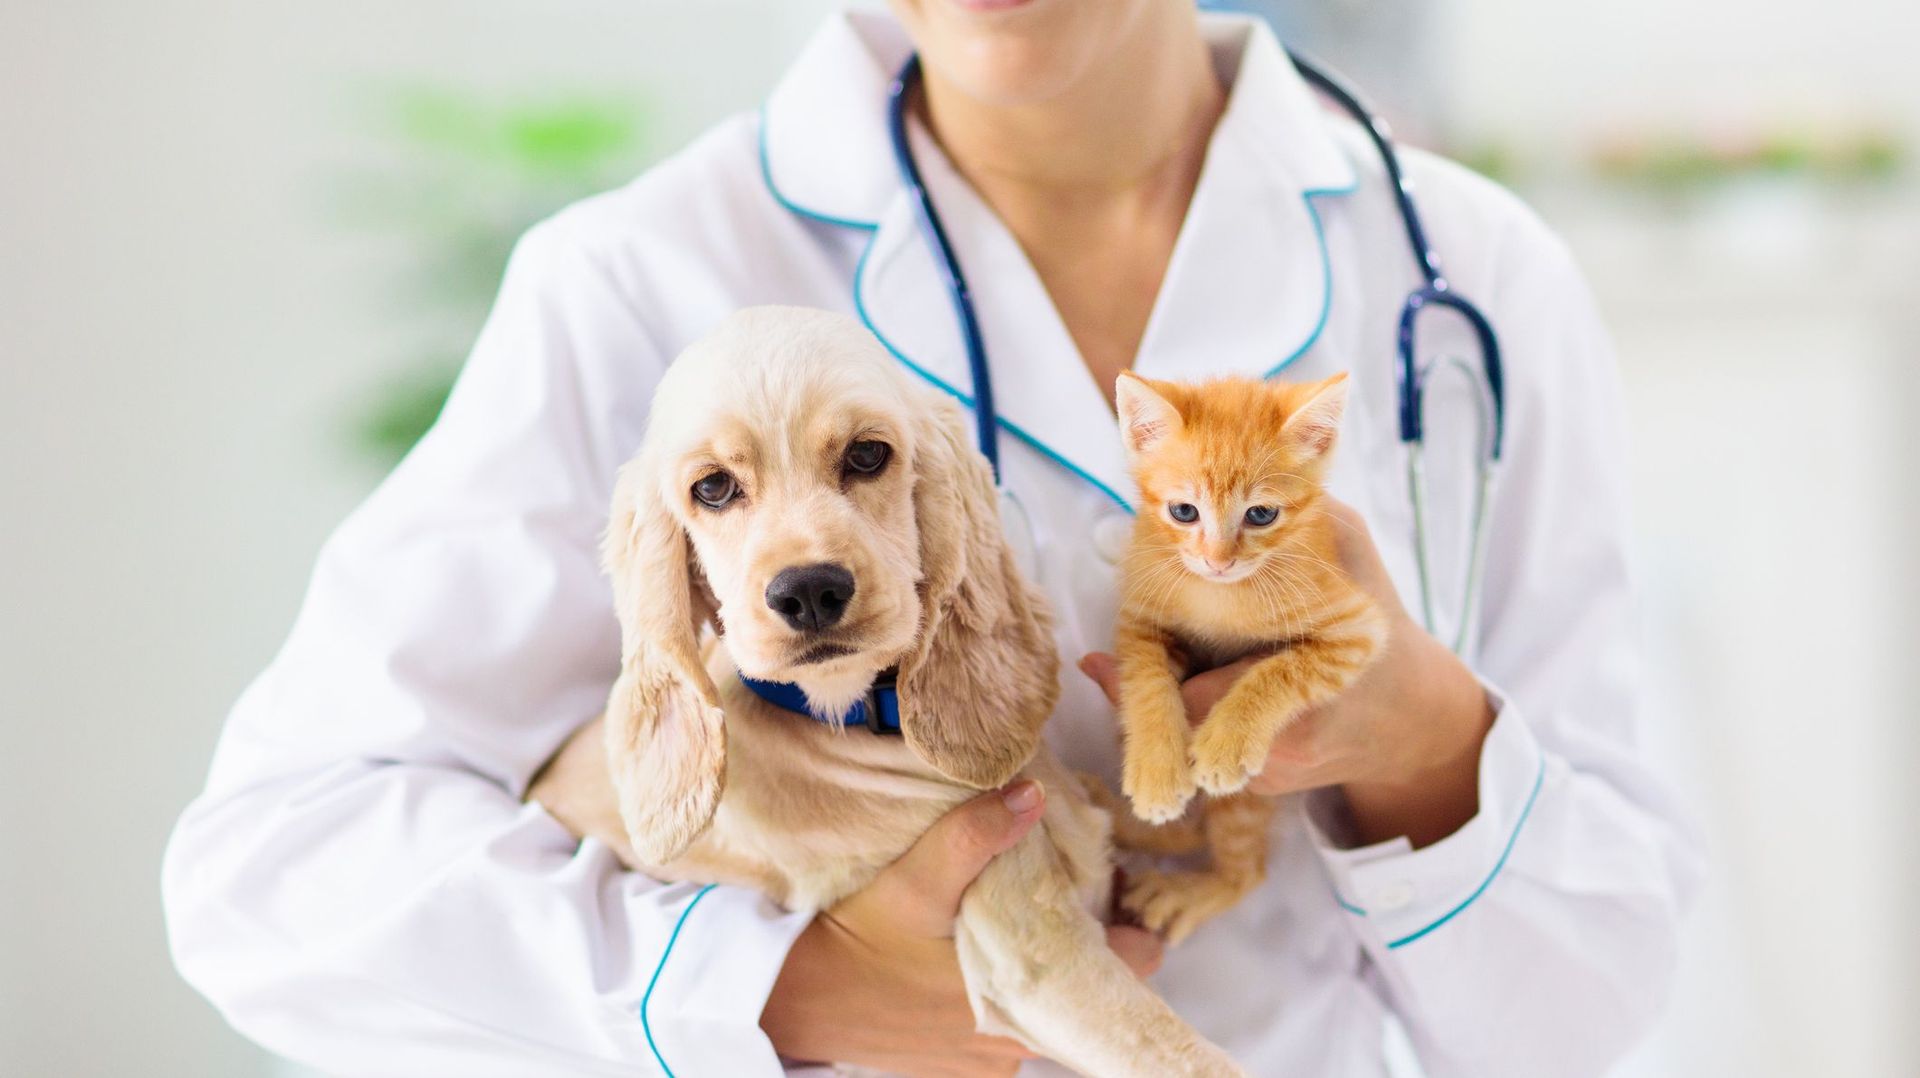 Effectuez les bons gestes et détectez tout problème de santé chez votre animal